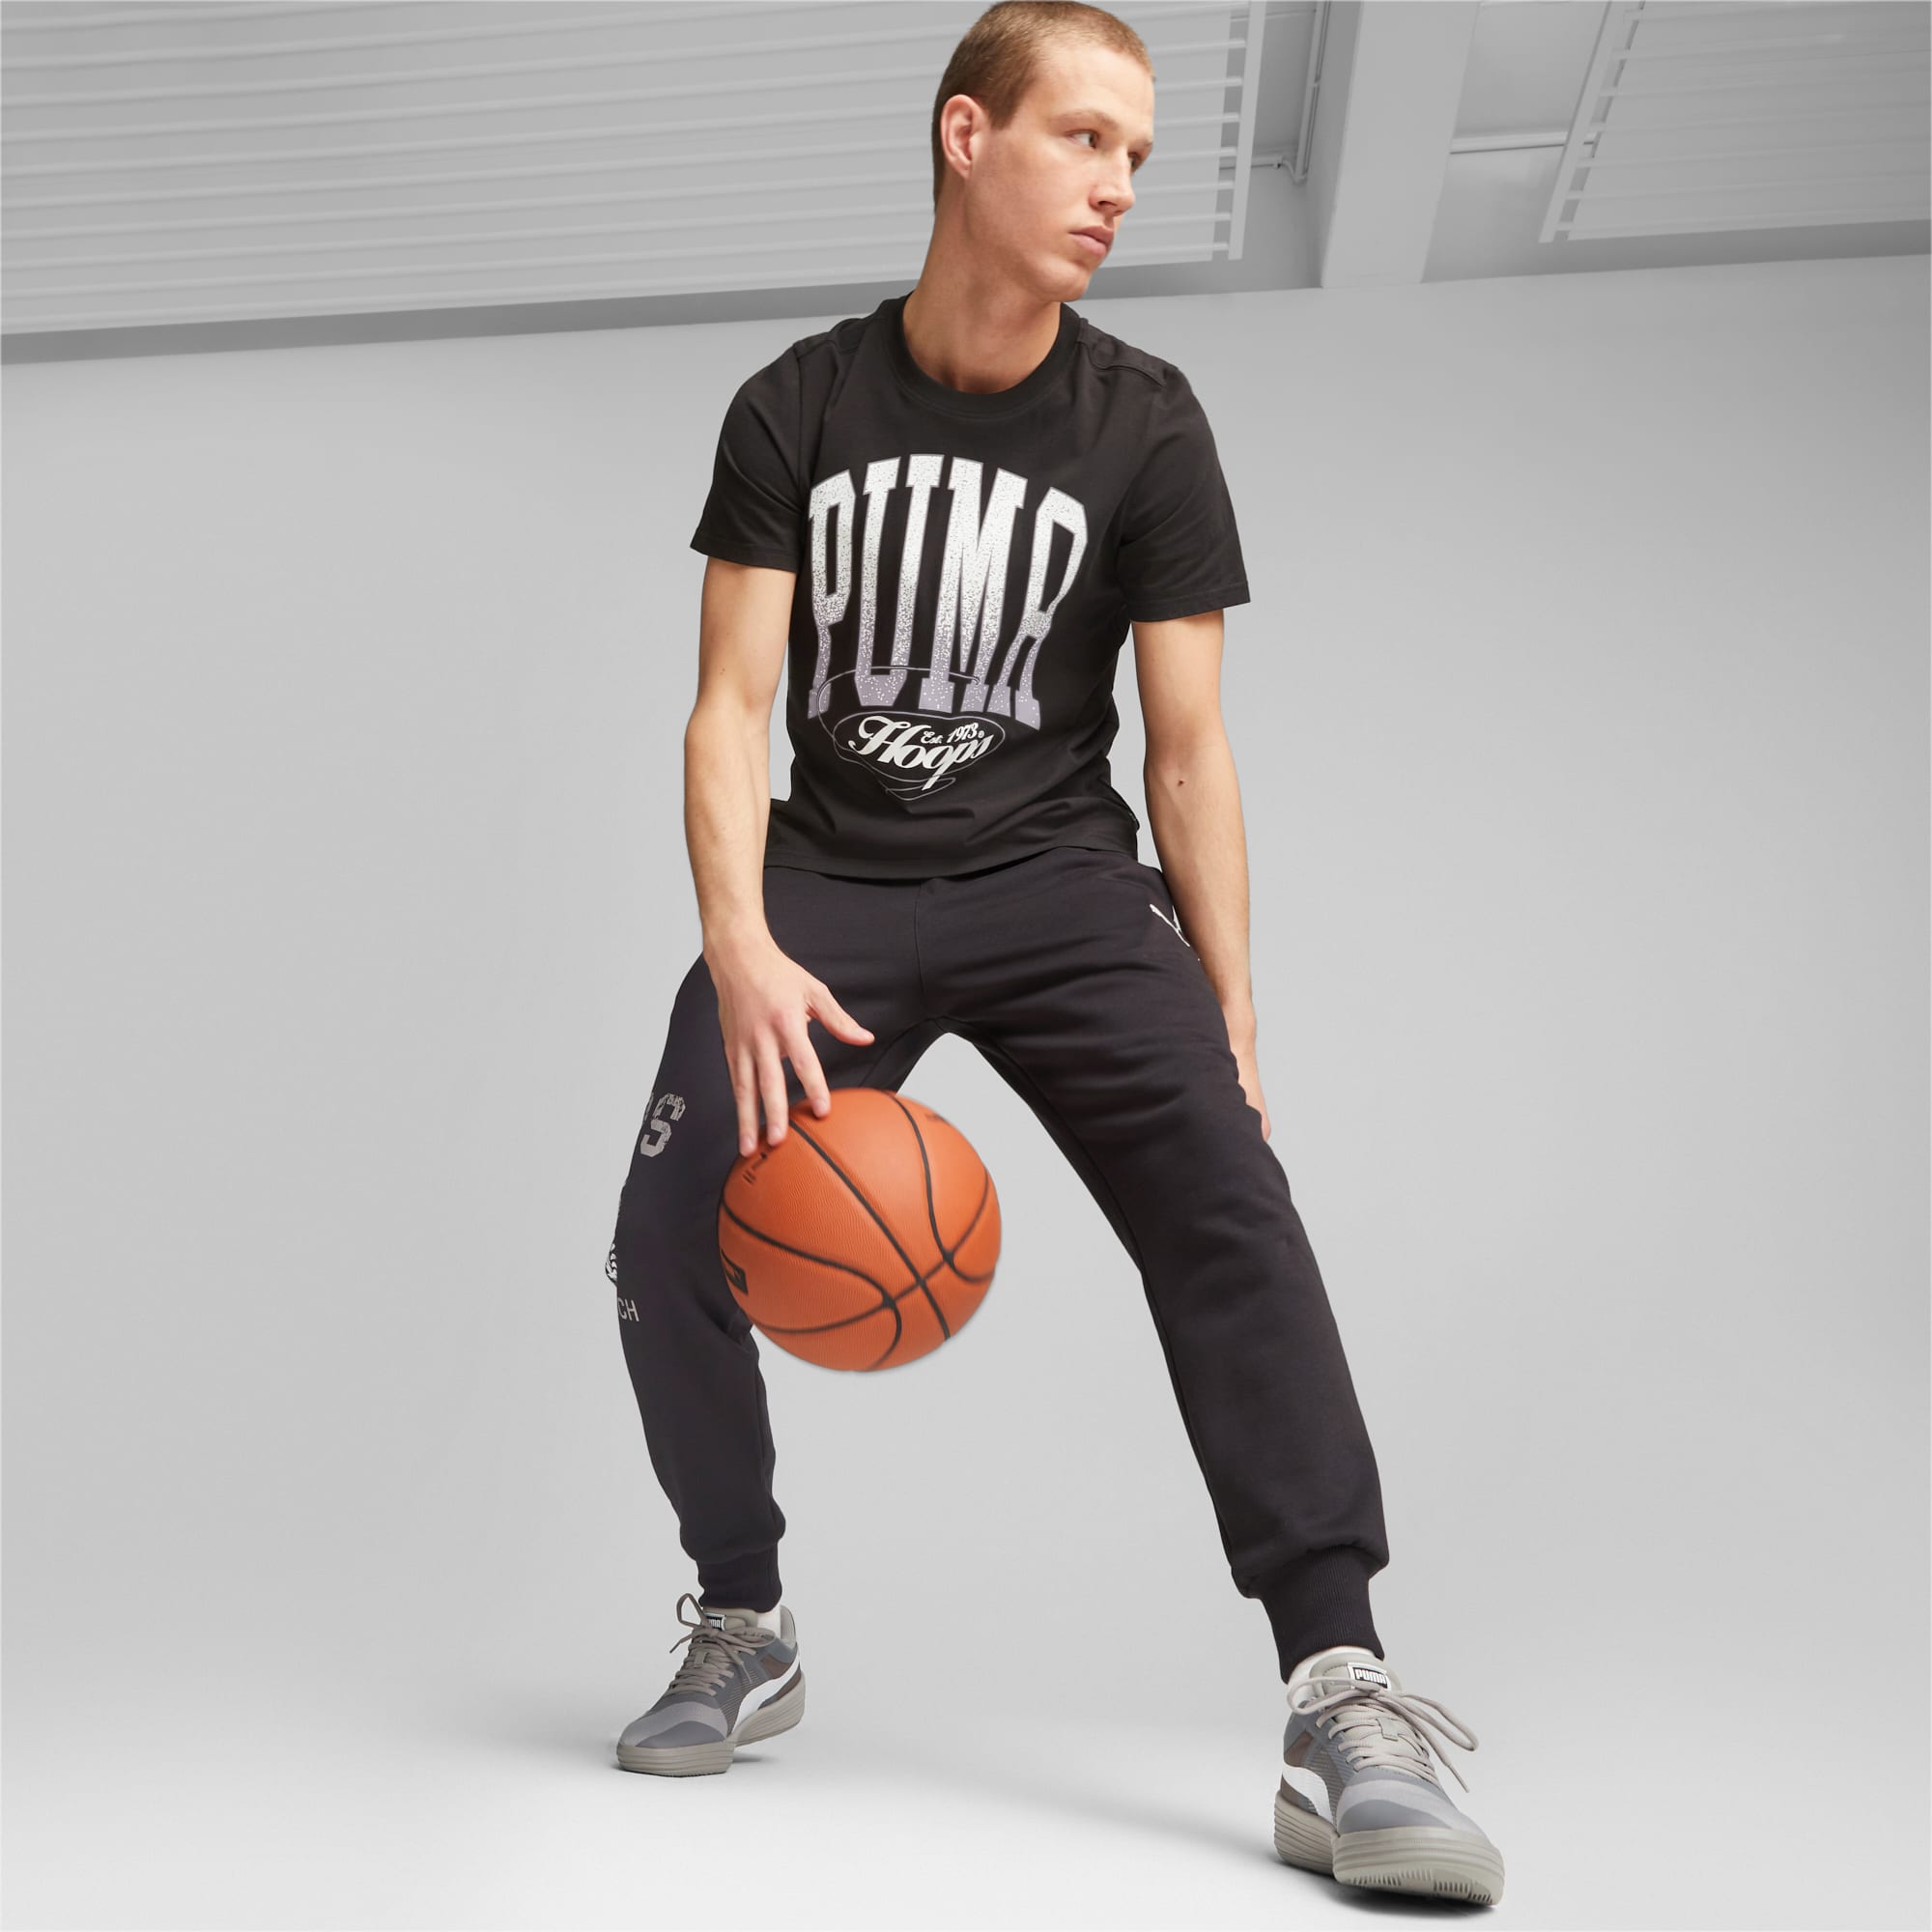 PUMA Clyde All-Pro Team Basketballschuhe Für Herren, Grau/Weiß, Größe: 40, Schuhe